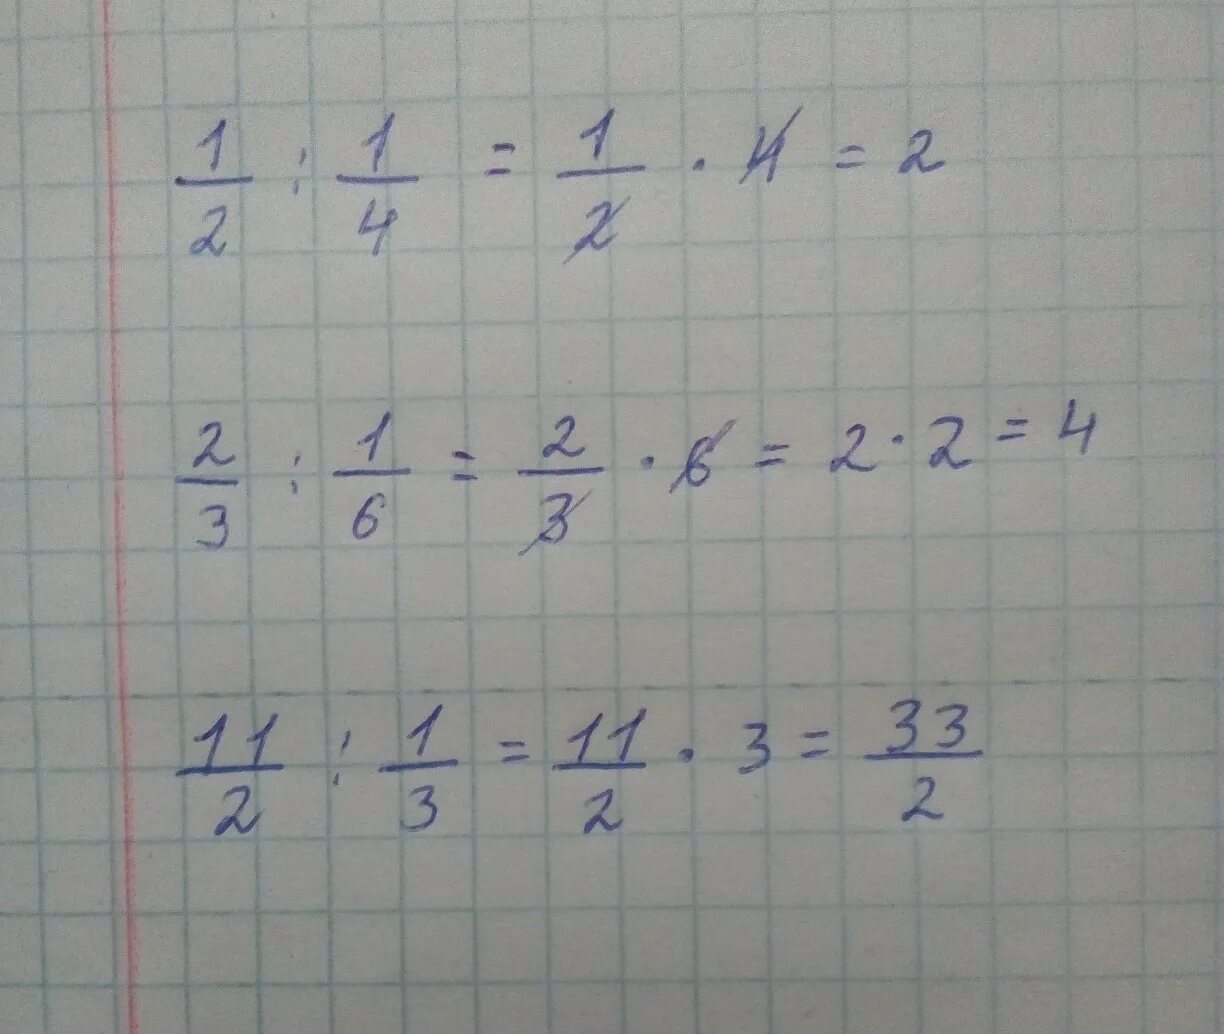 Решение 2 75 1 1 2. (1/2-1/3):(1/3-1/4)*(3/2). (2 1/2+3 1/3)*6. (1/2-1/3):(1/3-1/4)*(3/2)=Пошагово. 2 2/3×3,5÷ 3 1/3.